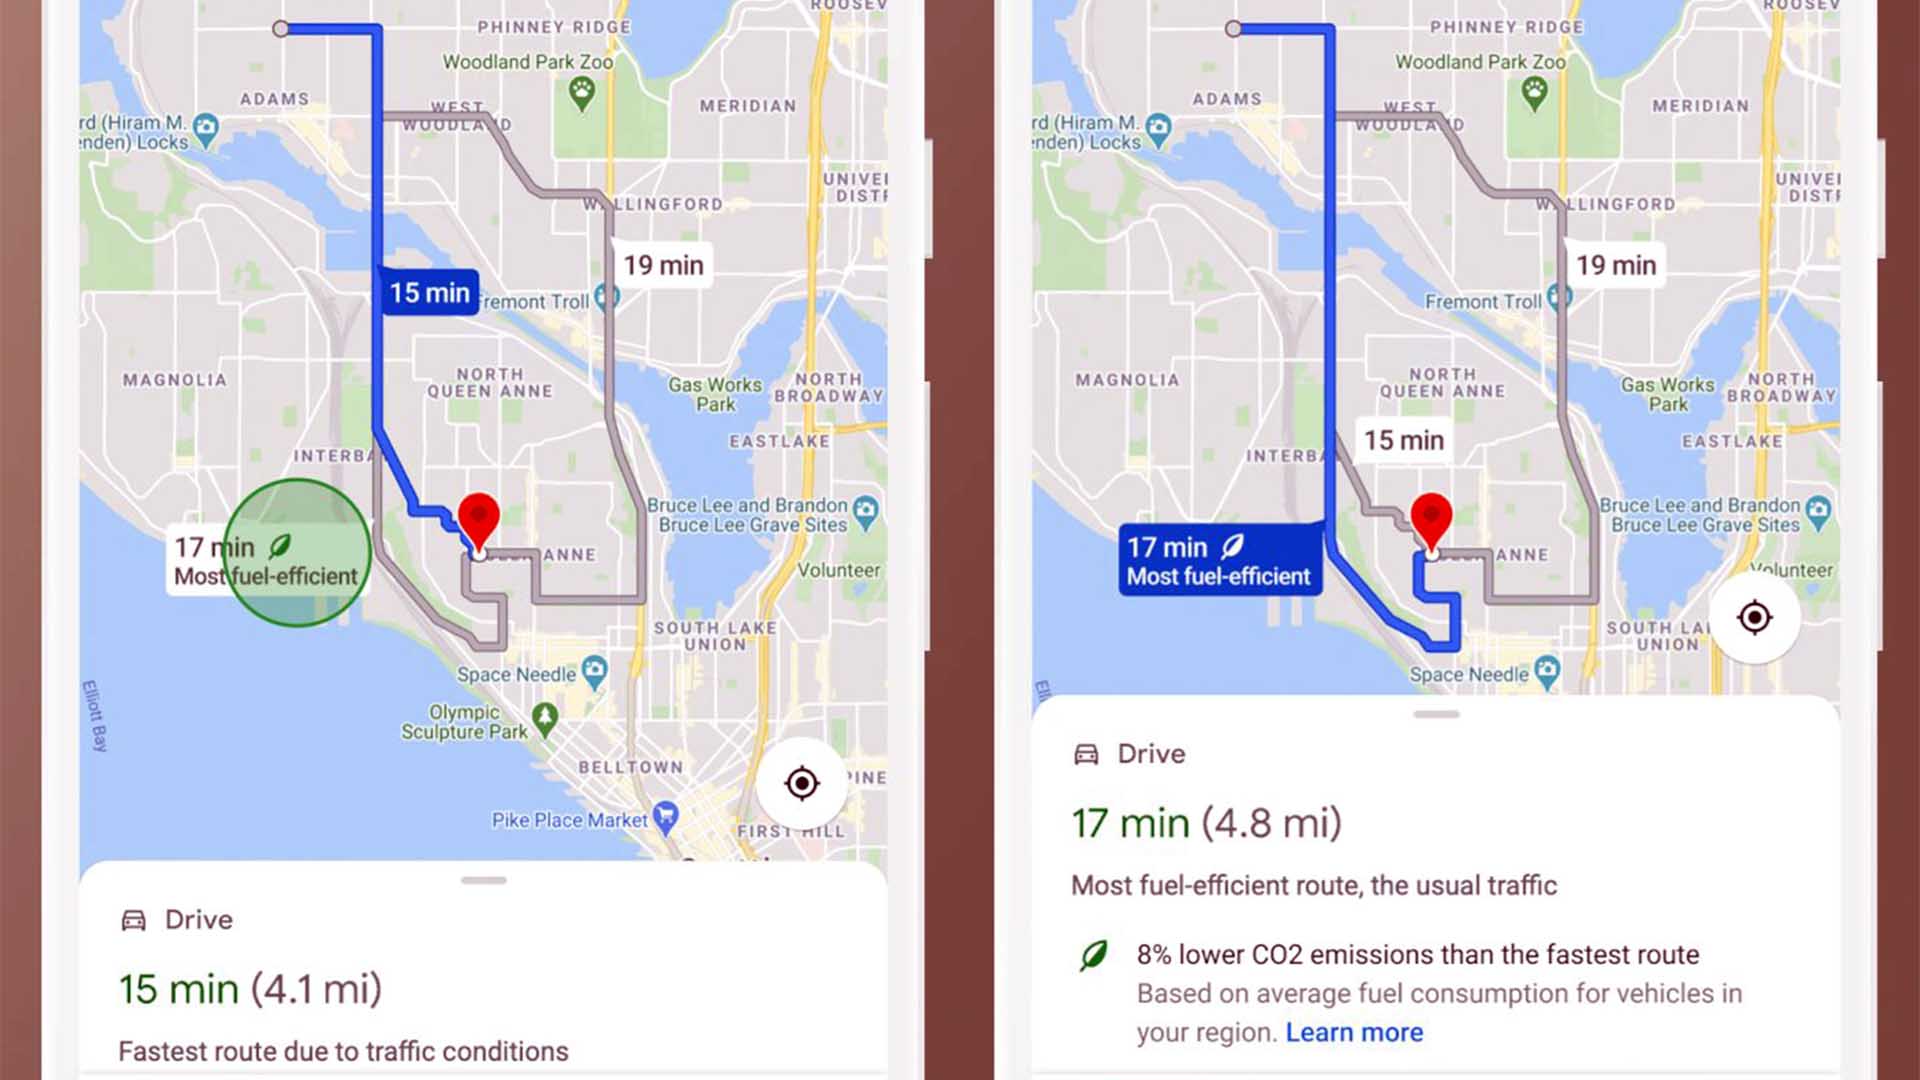 Google Maps empezará a mostrar el camino más rápido en gris y el más eficiente o menos contaminante en azul, como ruta recomendada